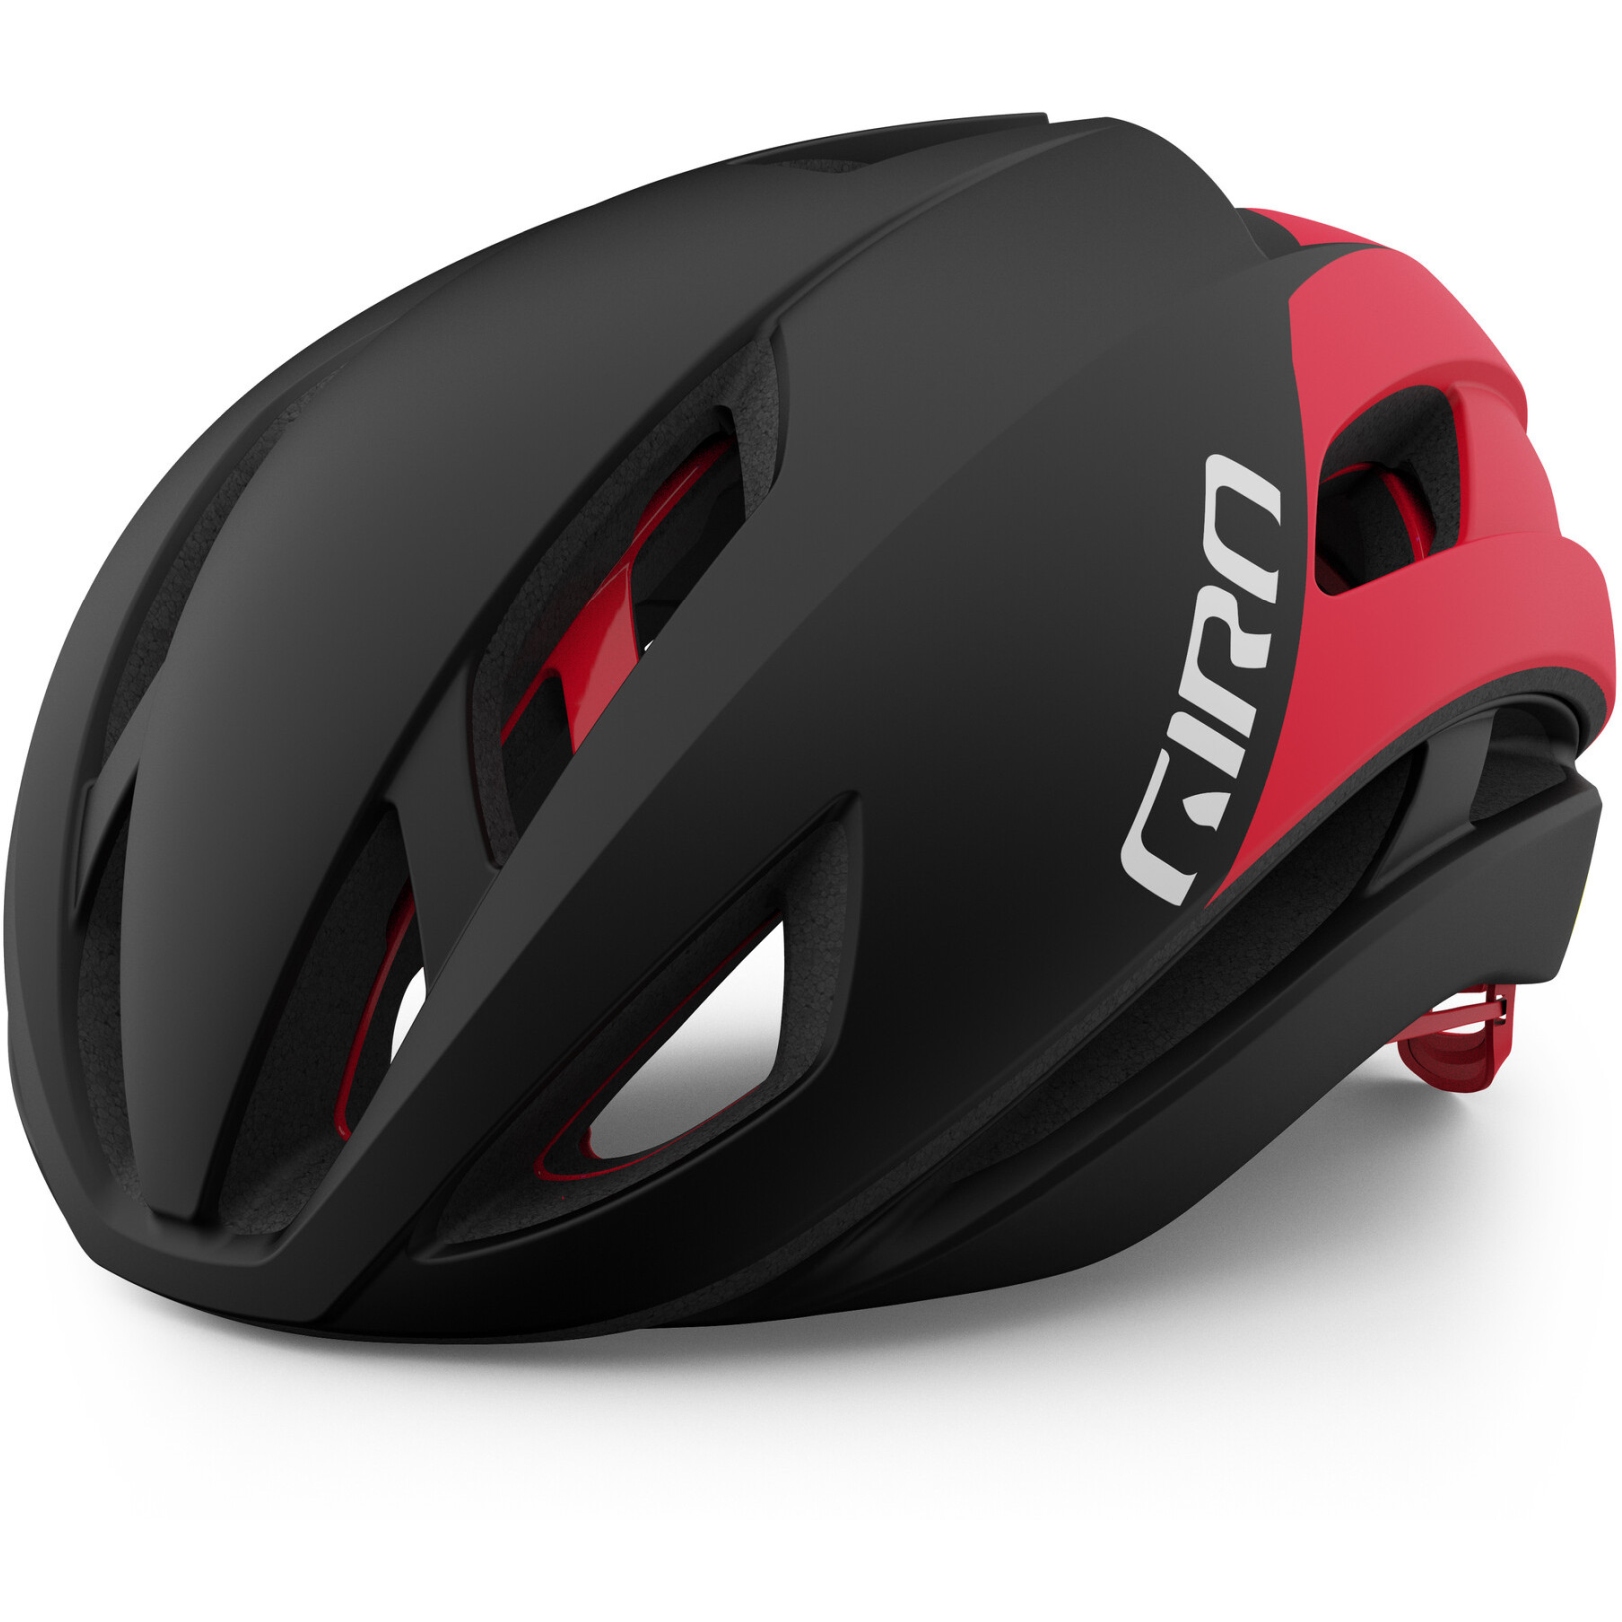 Produktbild von Giro Eclipse Spherical Helm - matte black/white/red